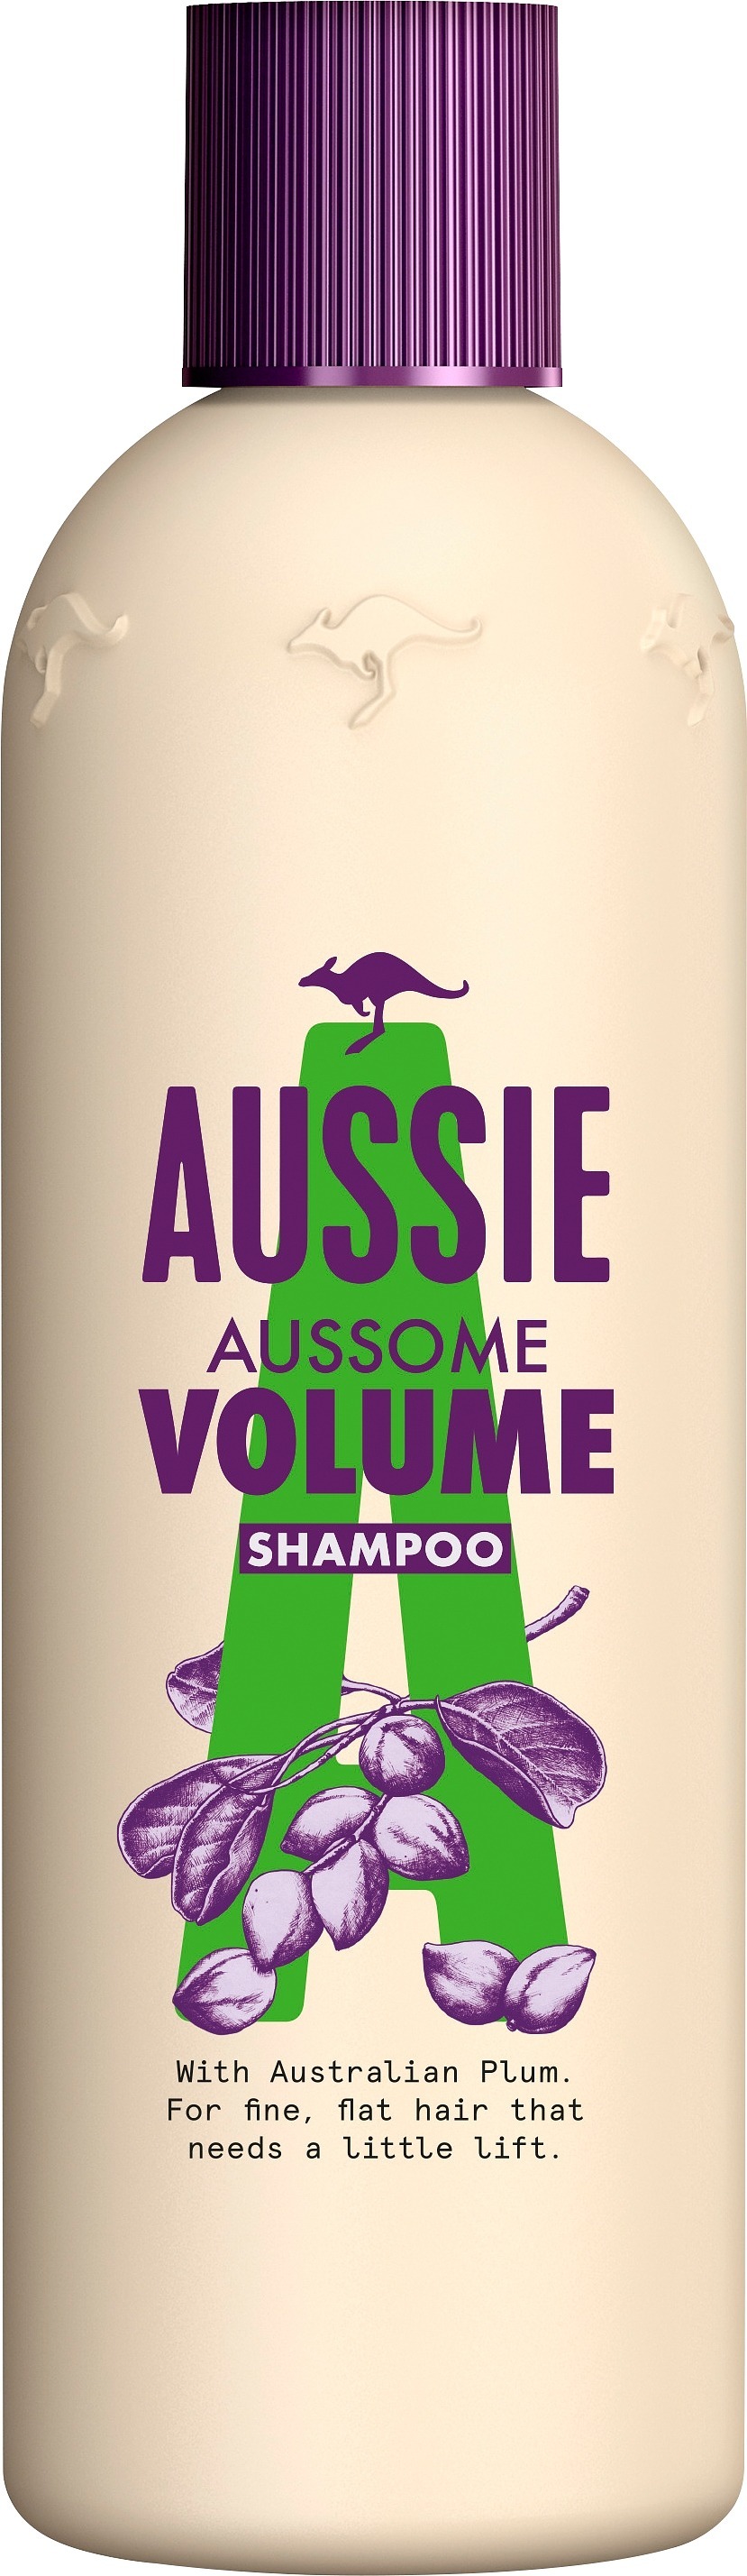 Aussie Shampoo volume 300 ml